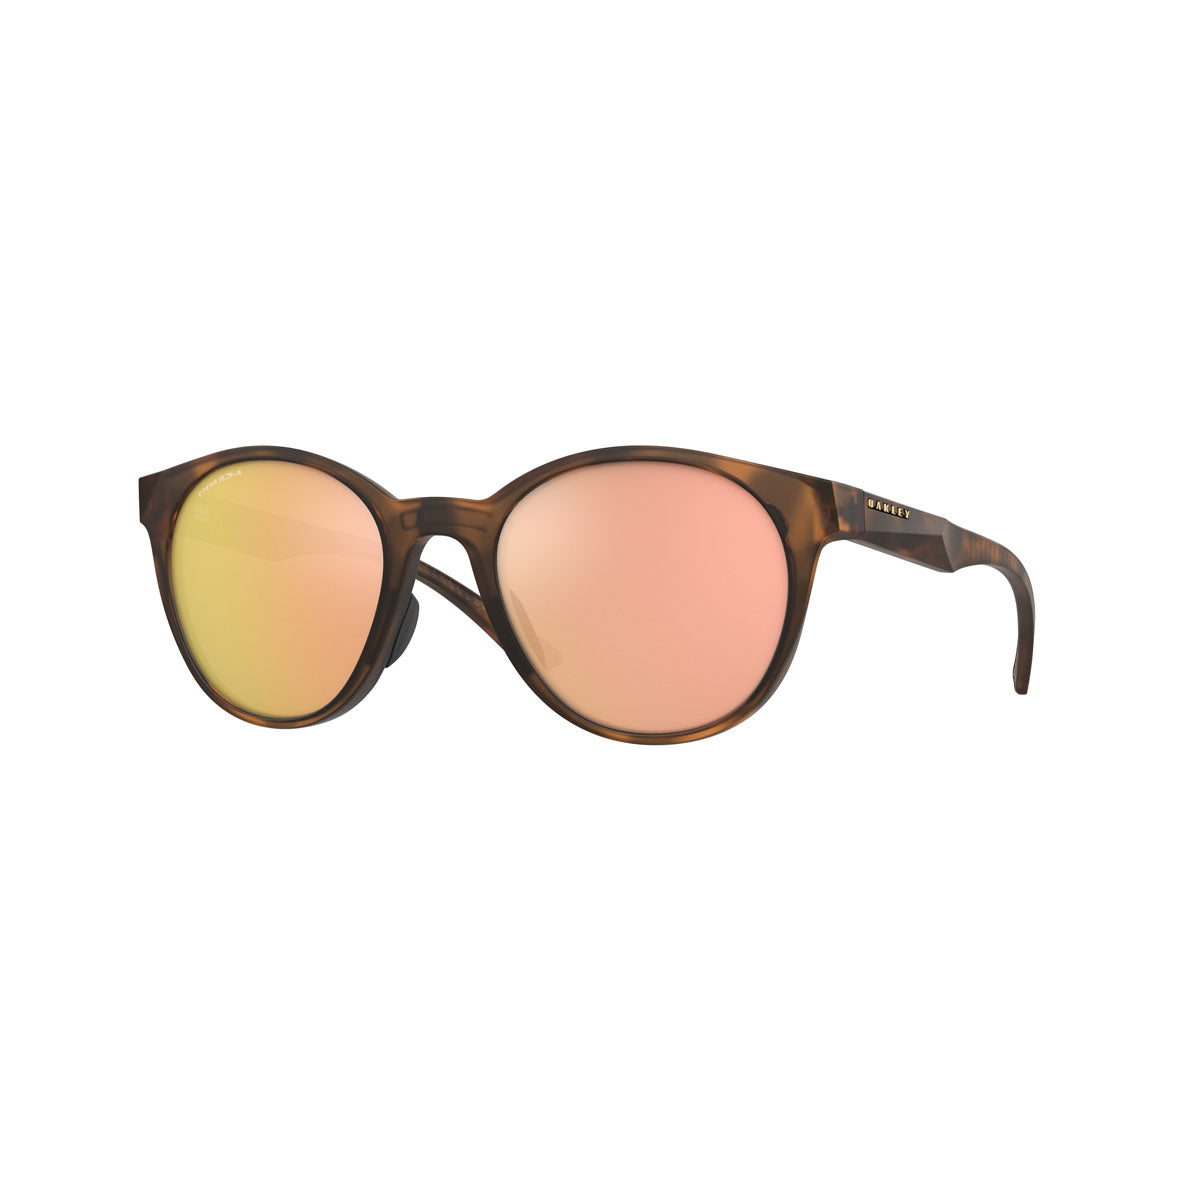 Oakley Womens Spindrift Sunglasses - Matte Brown Tortoise/PRIZM Rose Gold